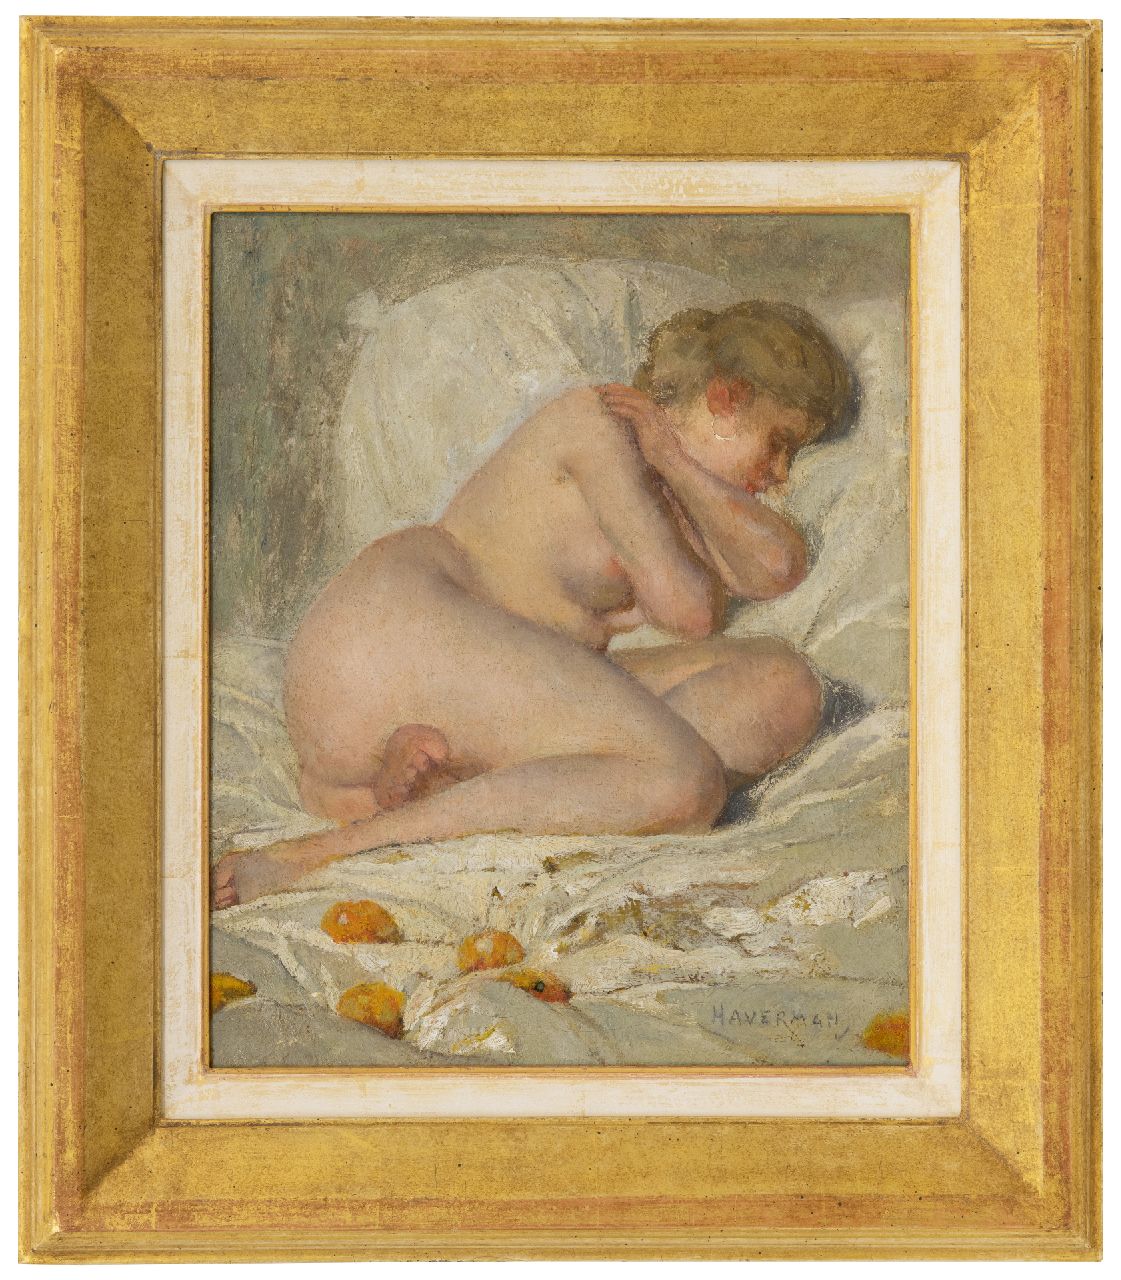 Haverman H.J.  | Hendrik Johannes Haverman | Schilderijen te koop aangeboden | Slapend naakt, olieverf op doek 30,5 x 25,7 cm, gesigneerd rechtsonder